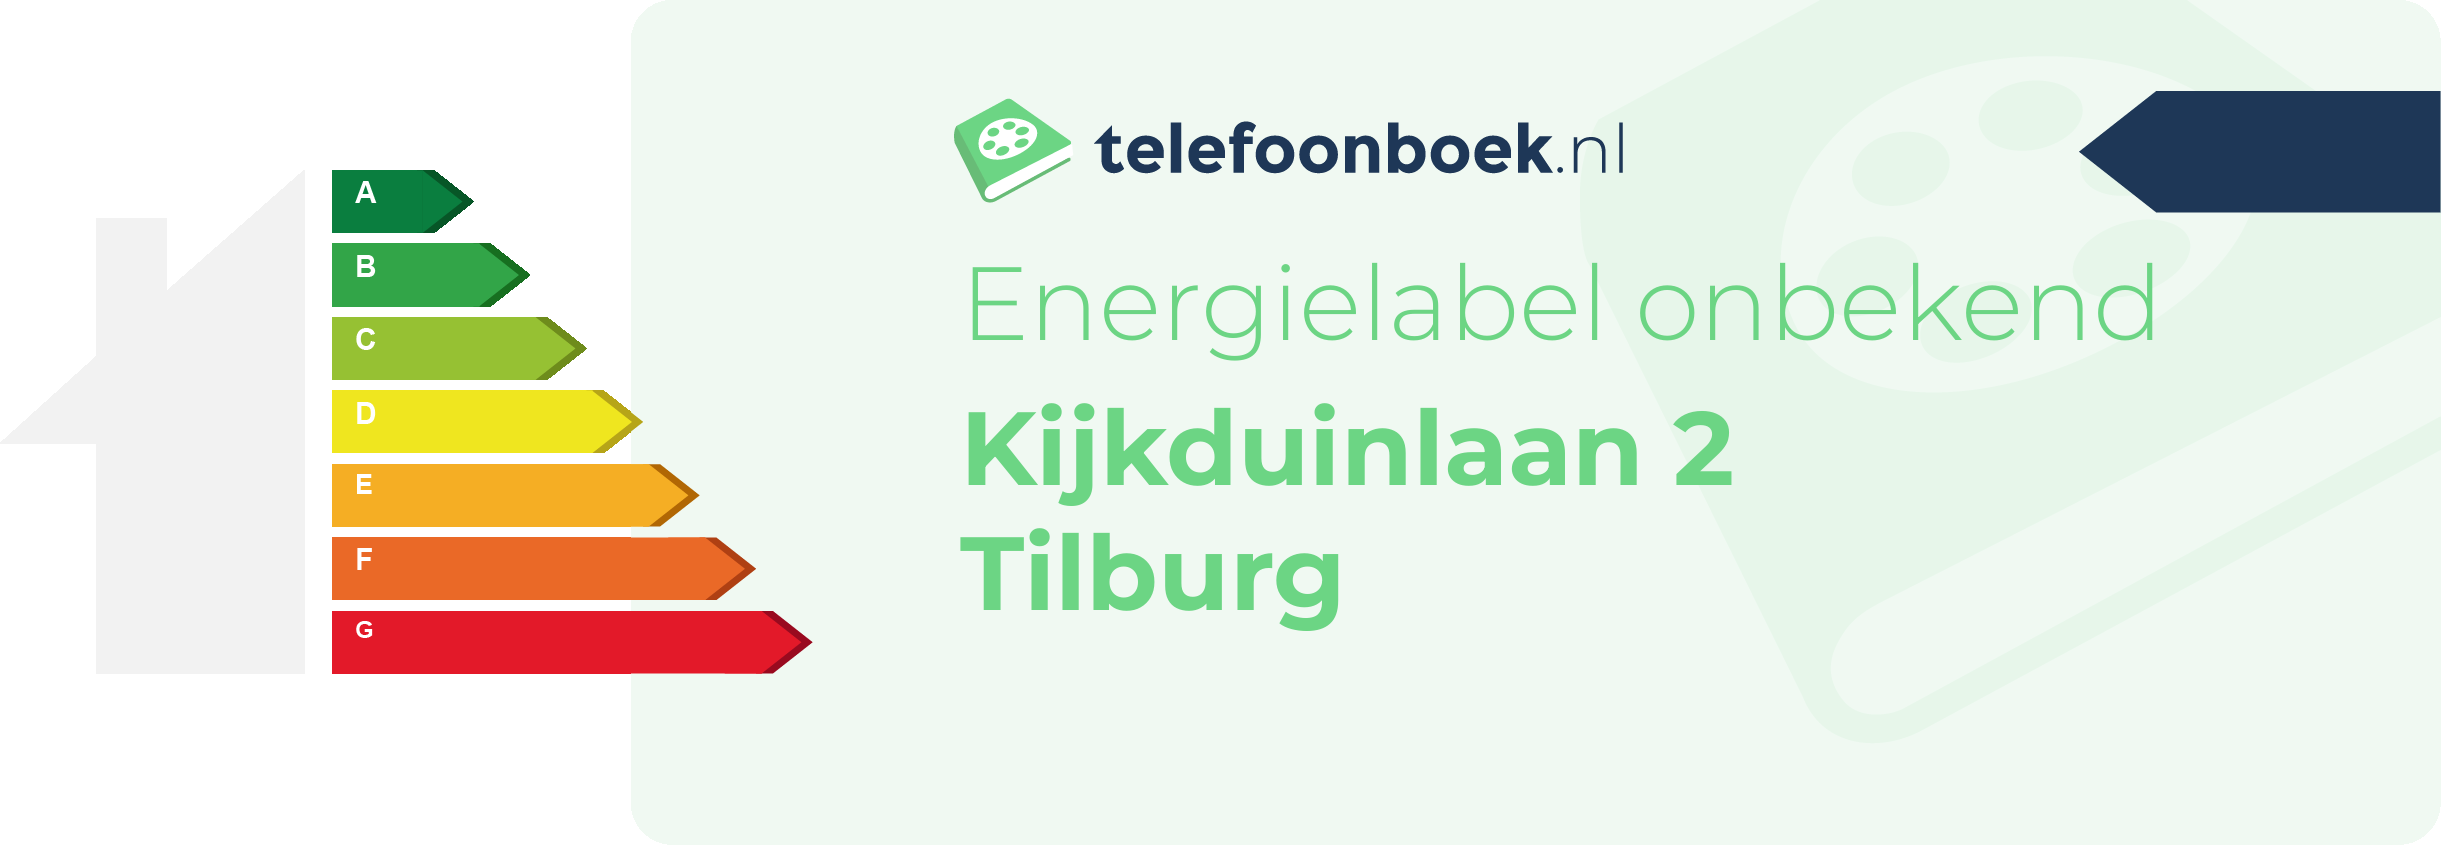 Energielabel Kijkduinlaan 2 Tilburg